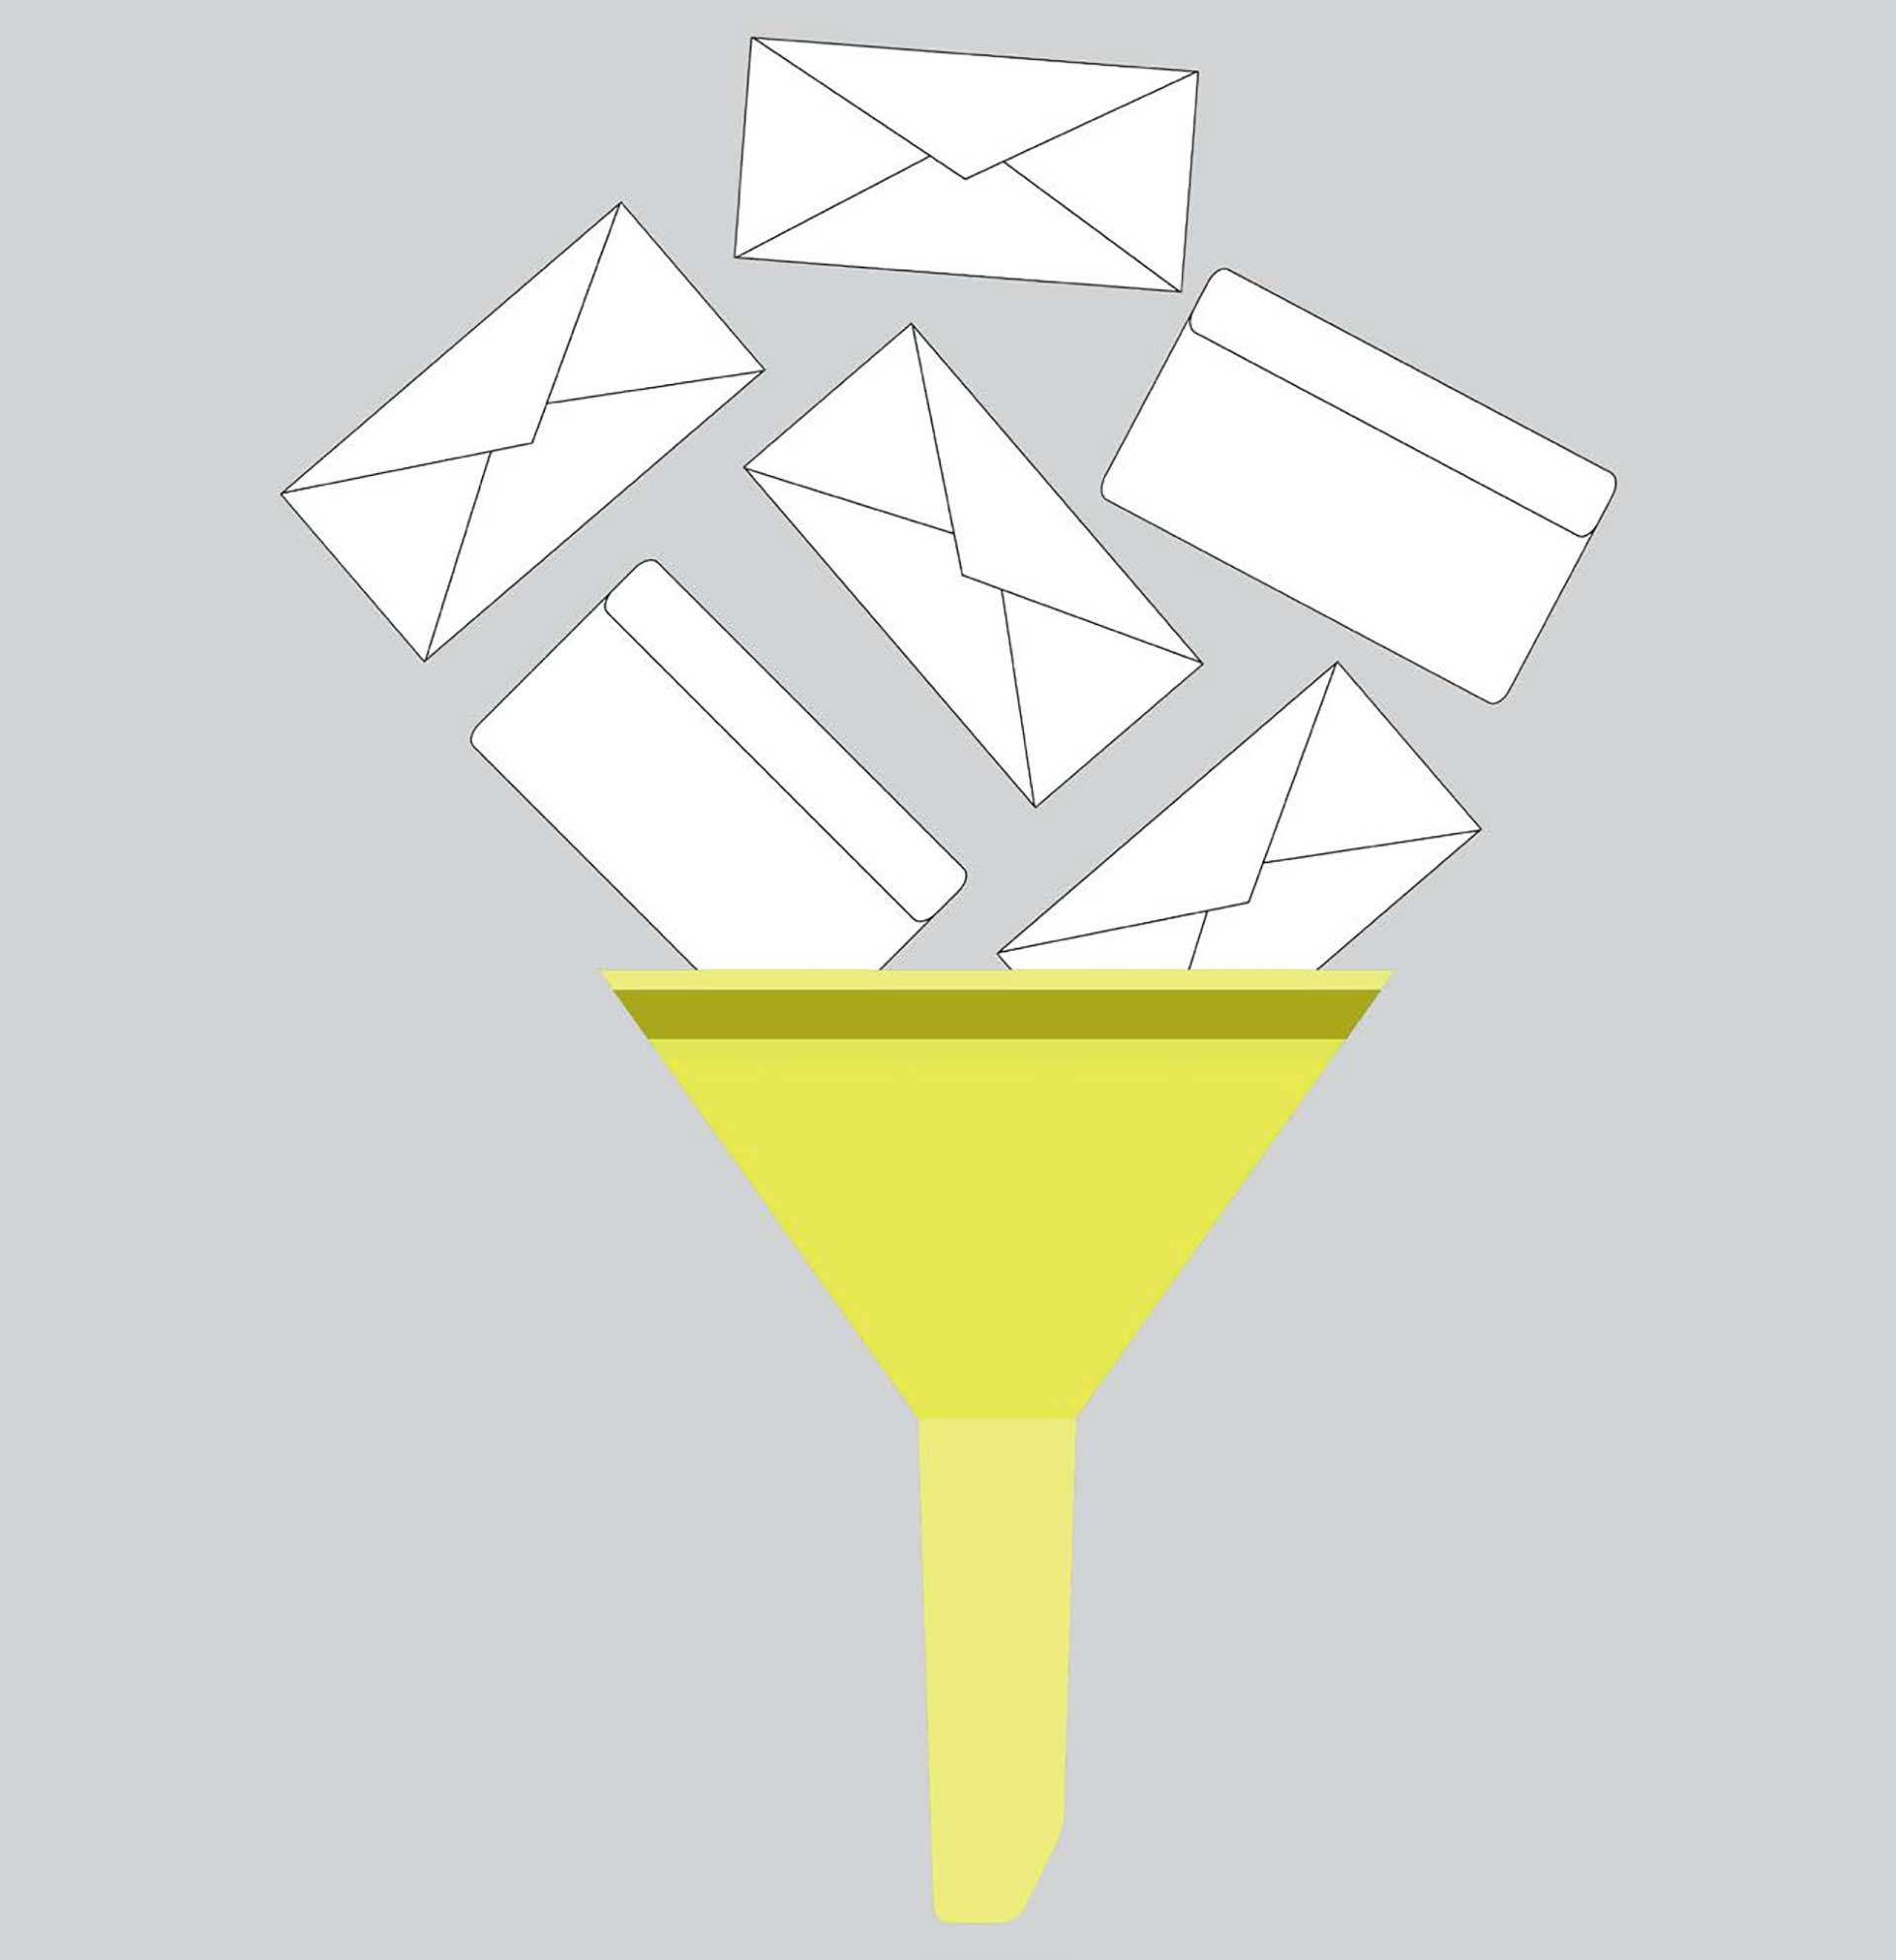 Sex brevkuvert släpps i en gul tratt, digital illustration.